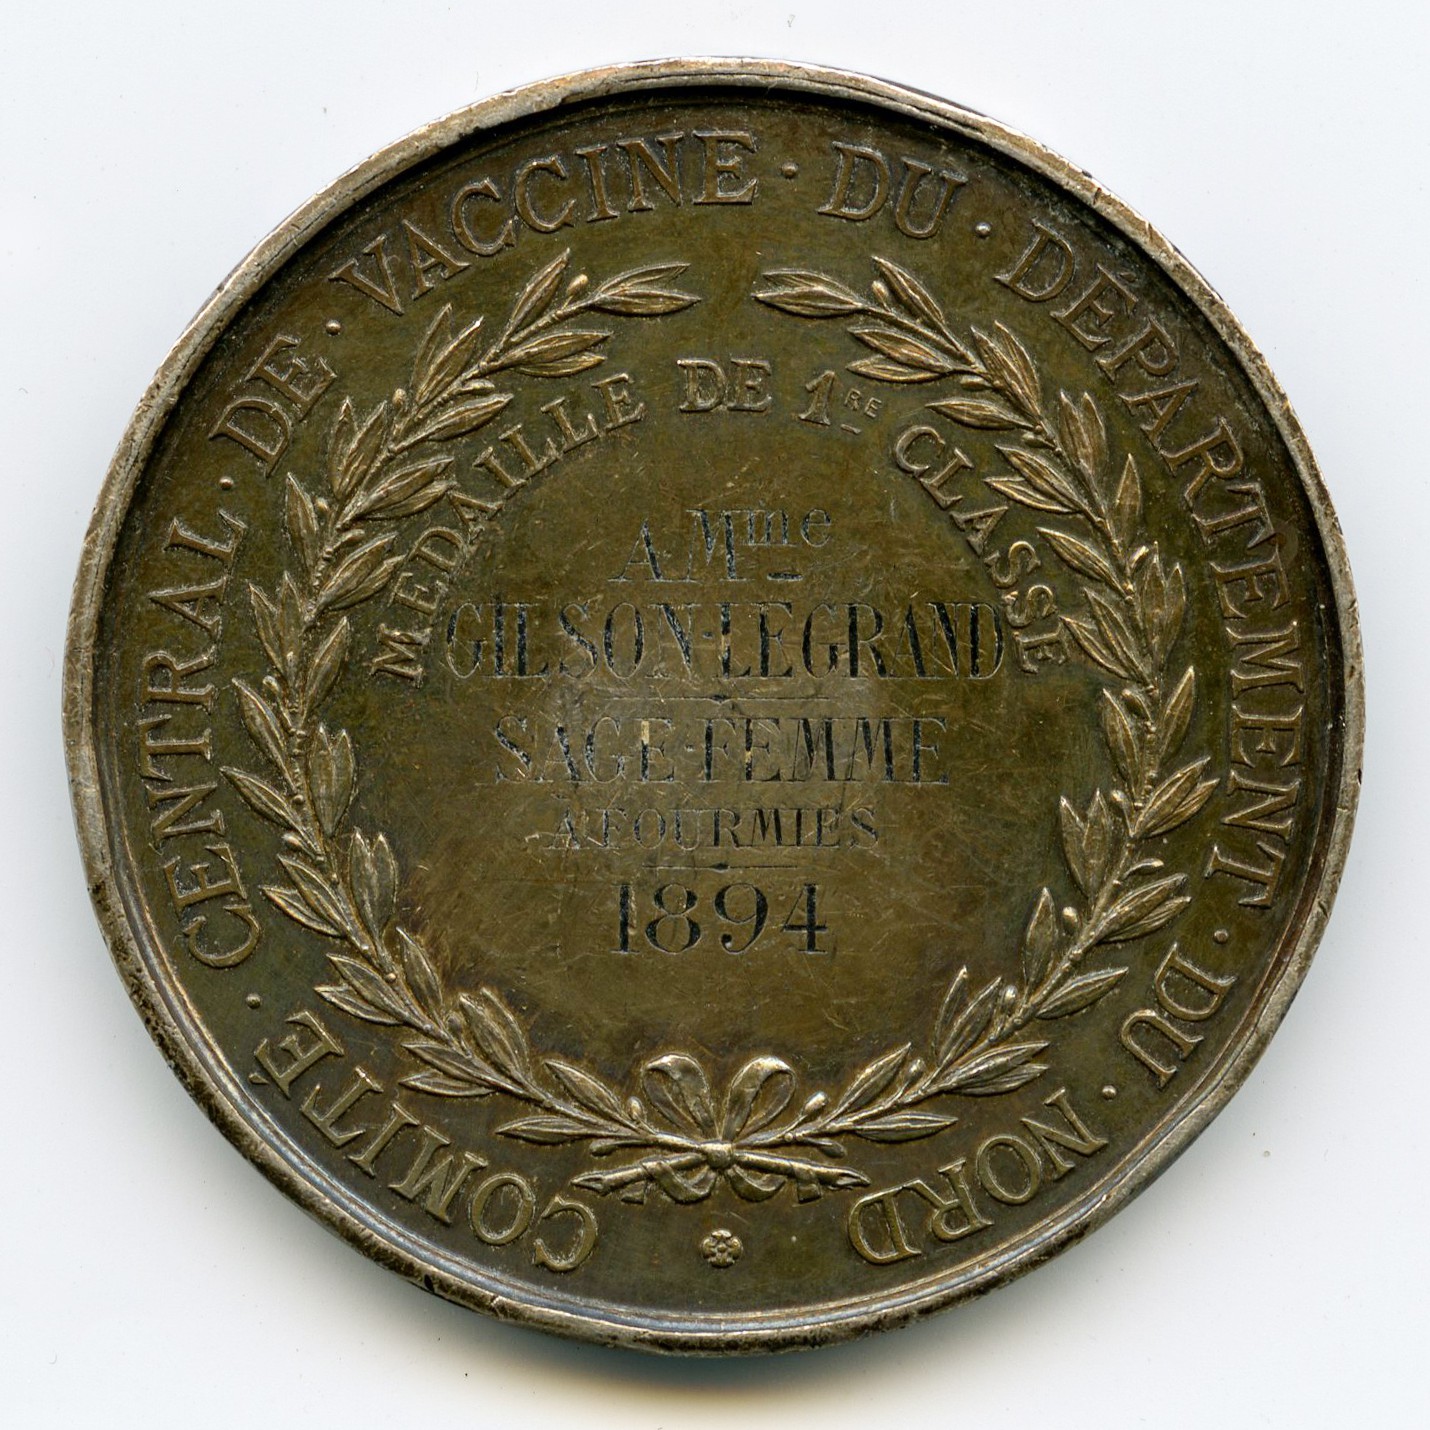 Edward Jenner - Médaille - 1894 revers